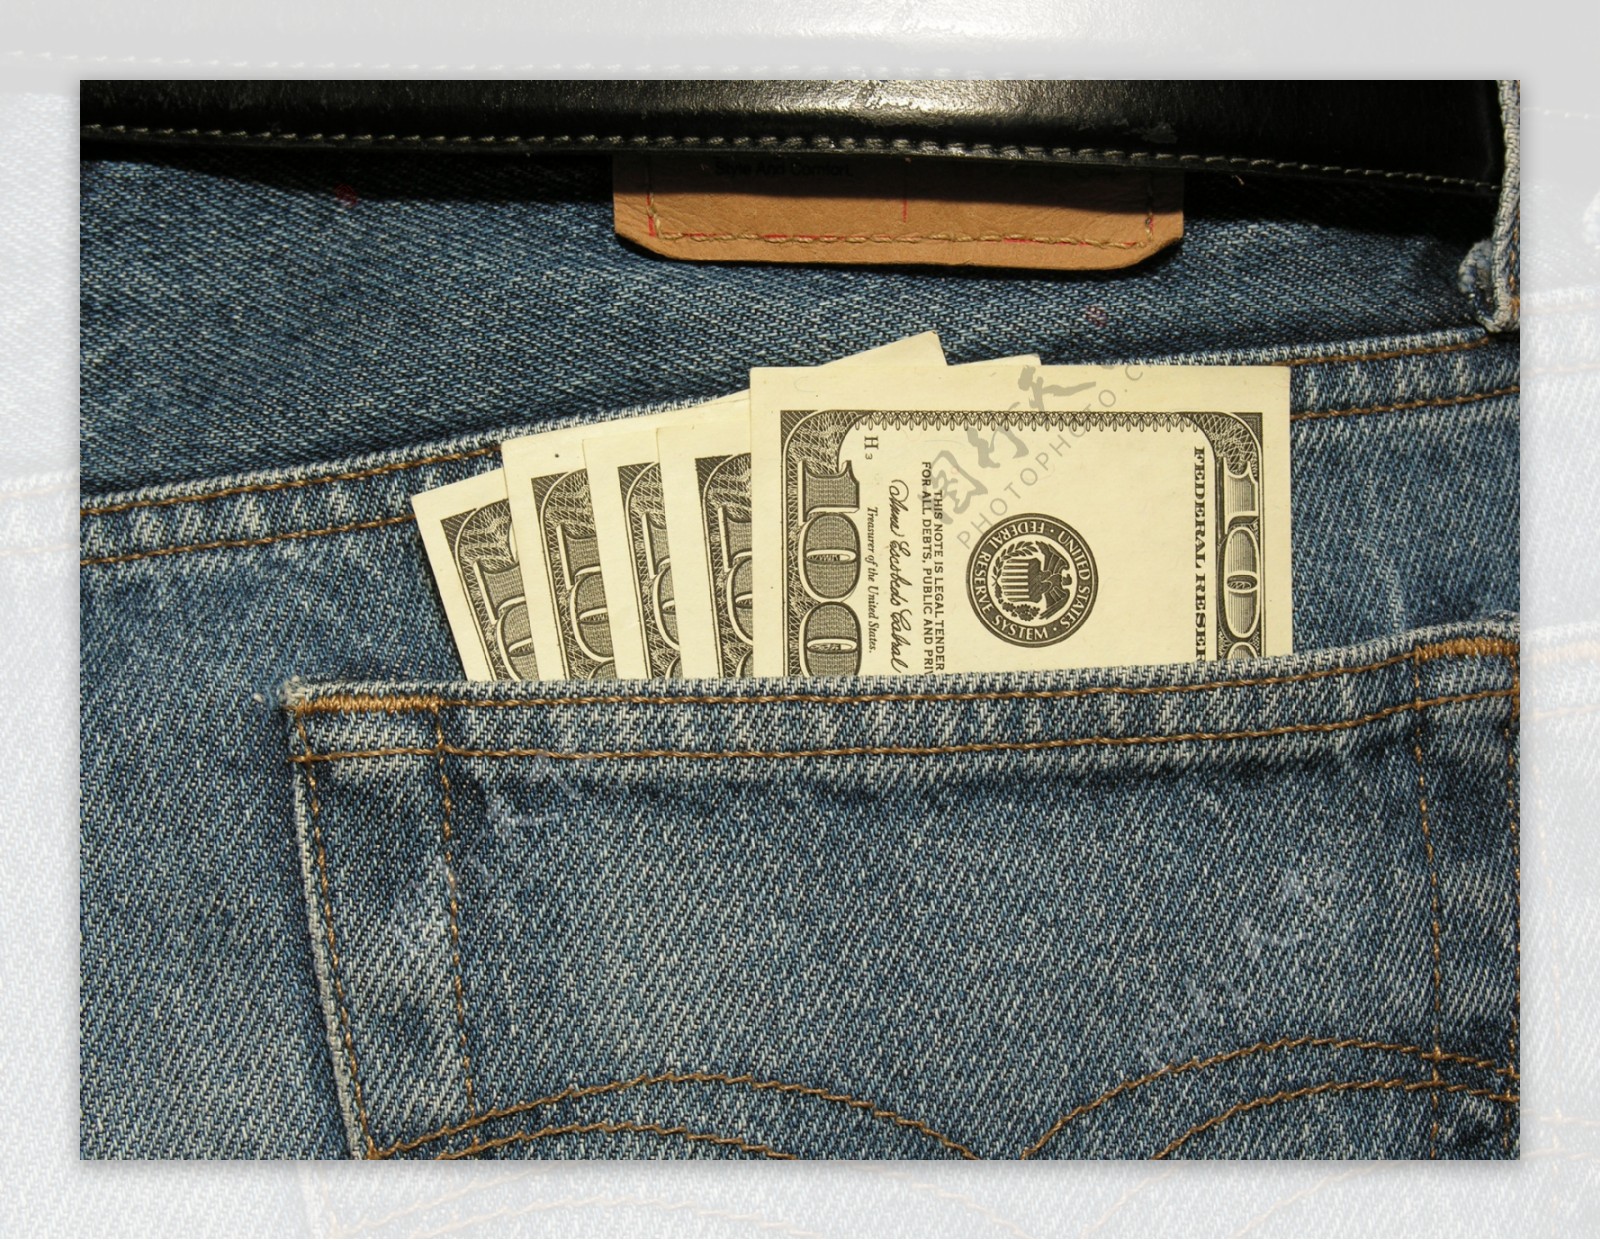 牛仔裤口袋中的钞票图片